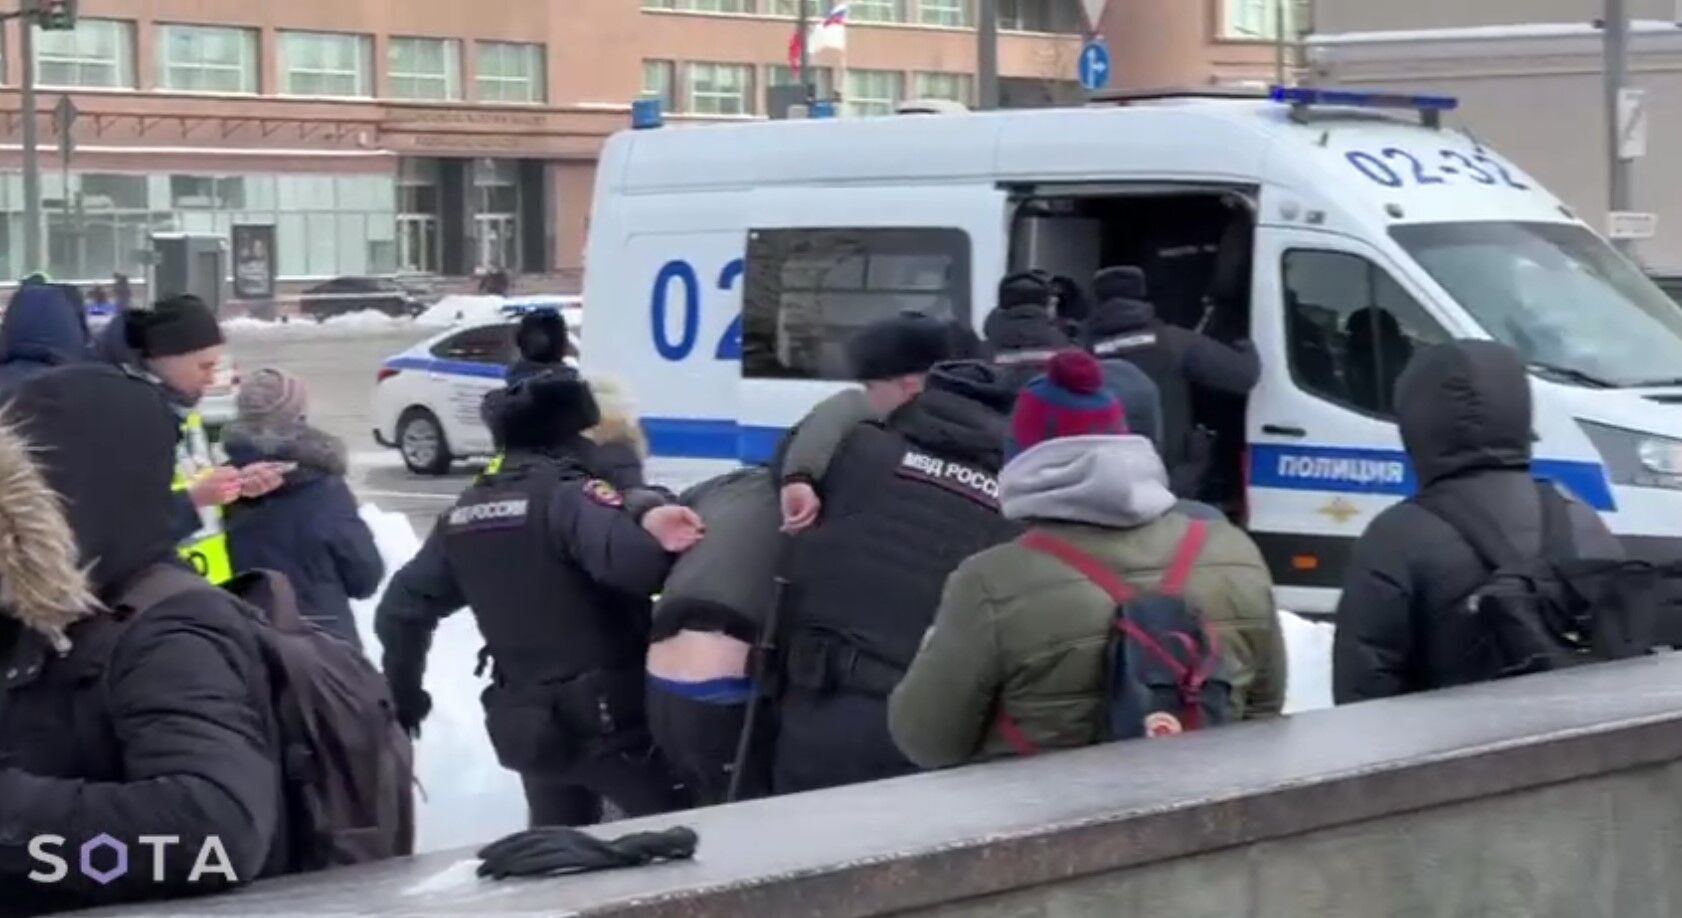 Соратники Навального подтвердили его смерть: в России начались задержания участников памятных акций. Фото и видео